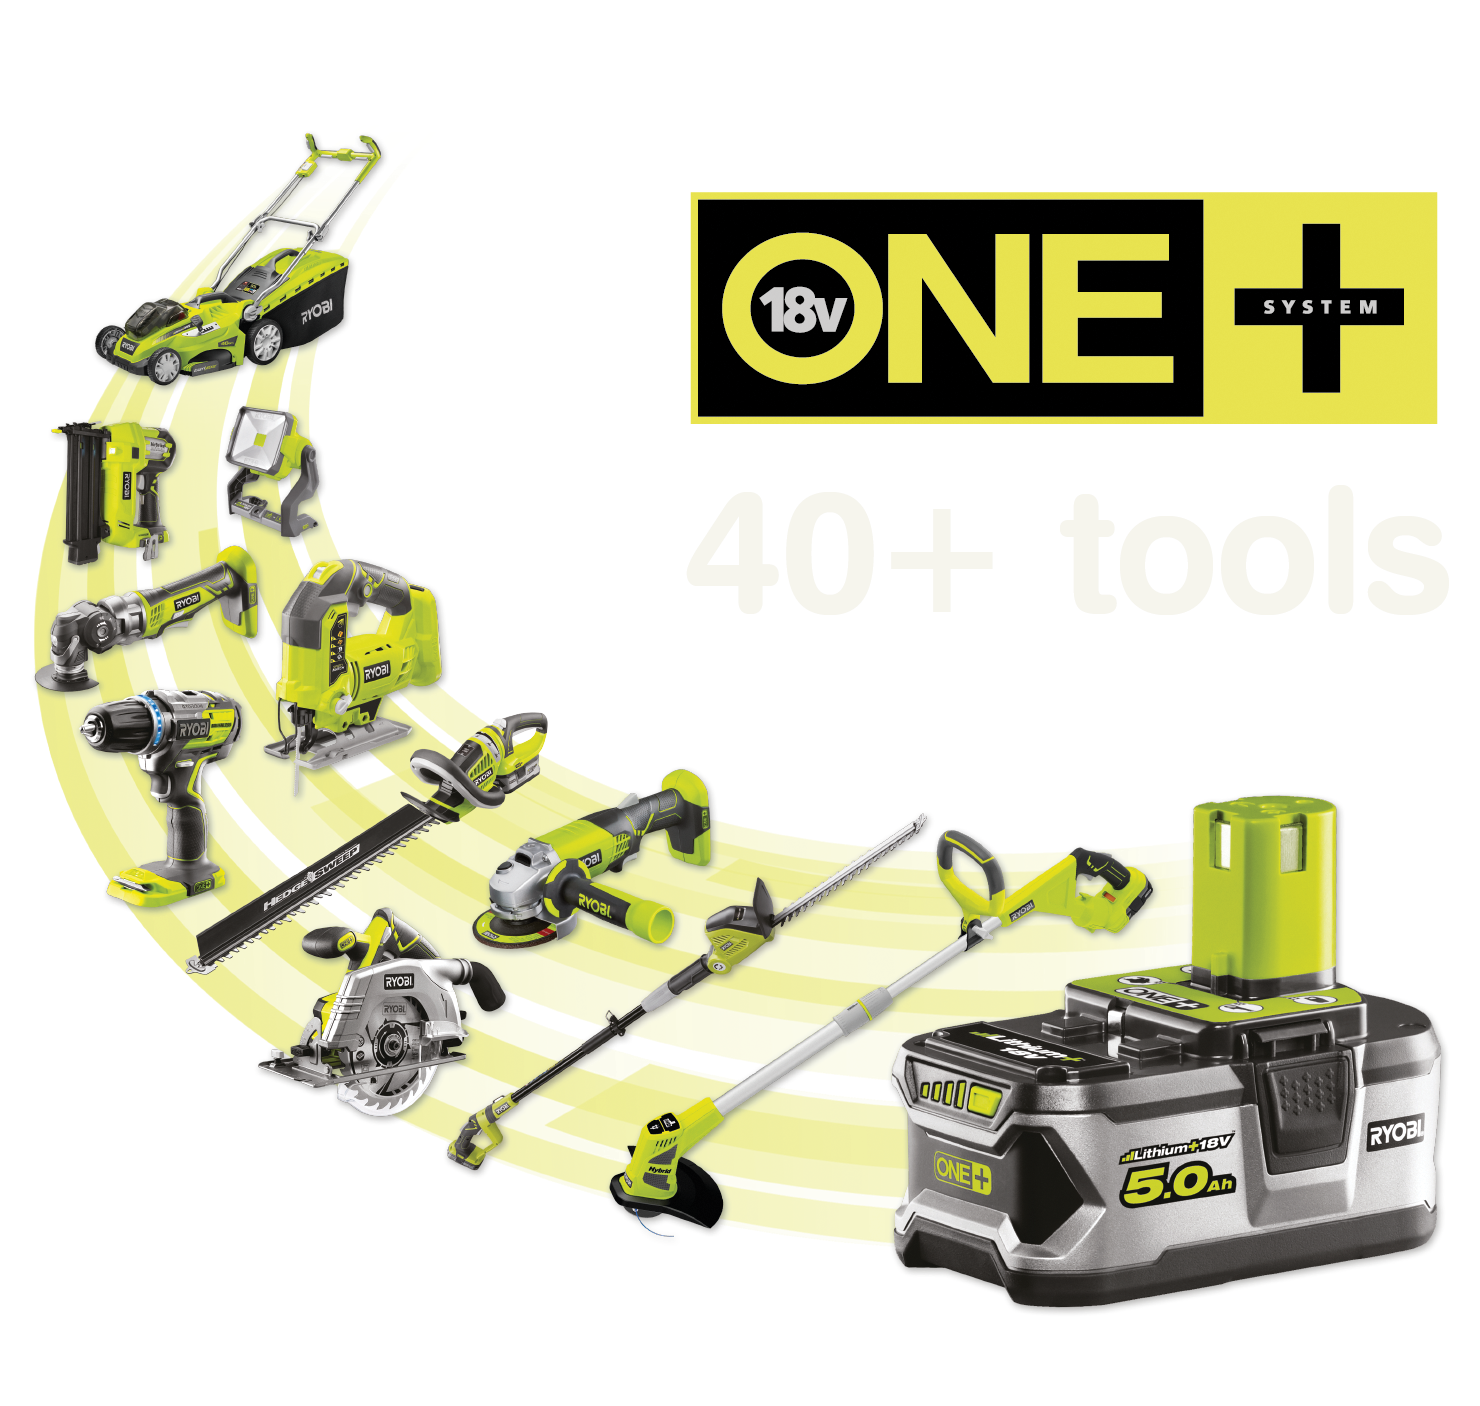 Más de 40 herramientas alimentadas por la misma batería ONE+